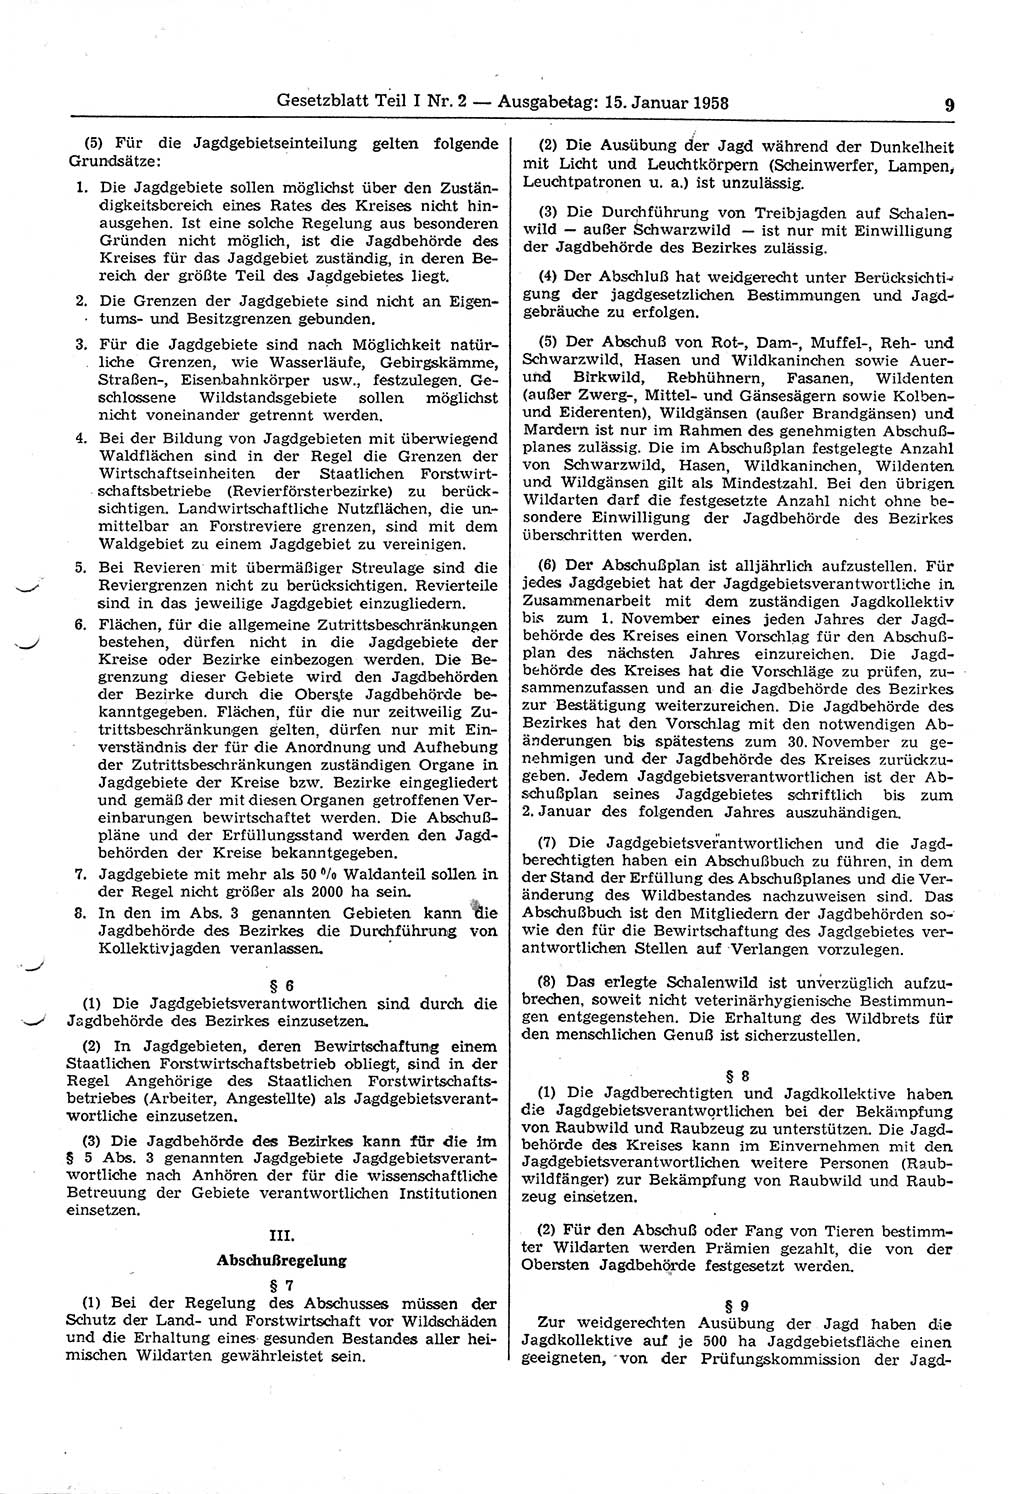 Gesetzblatt (GBl.) der Deutschen Demokratischen Republik (DDR) Teil Ⅰ 1958, Seite 9 (GBl. DDR Ⅰ 1958, S. 9)